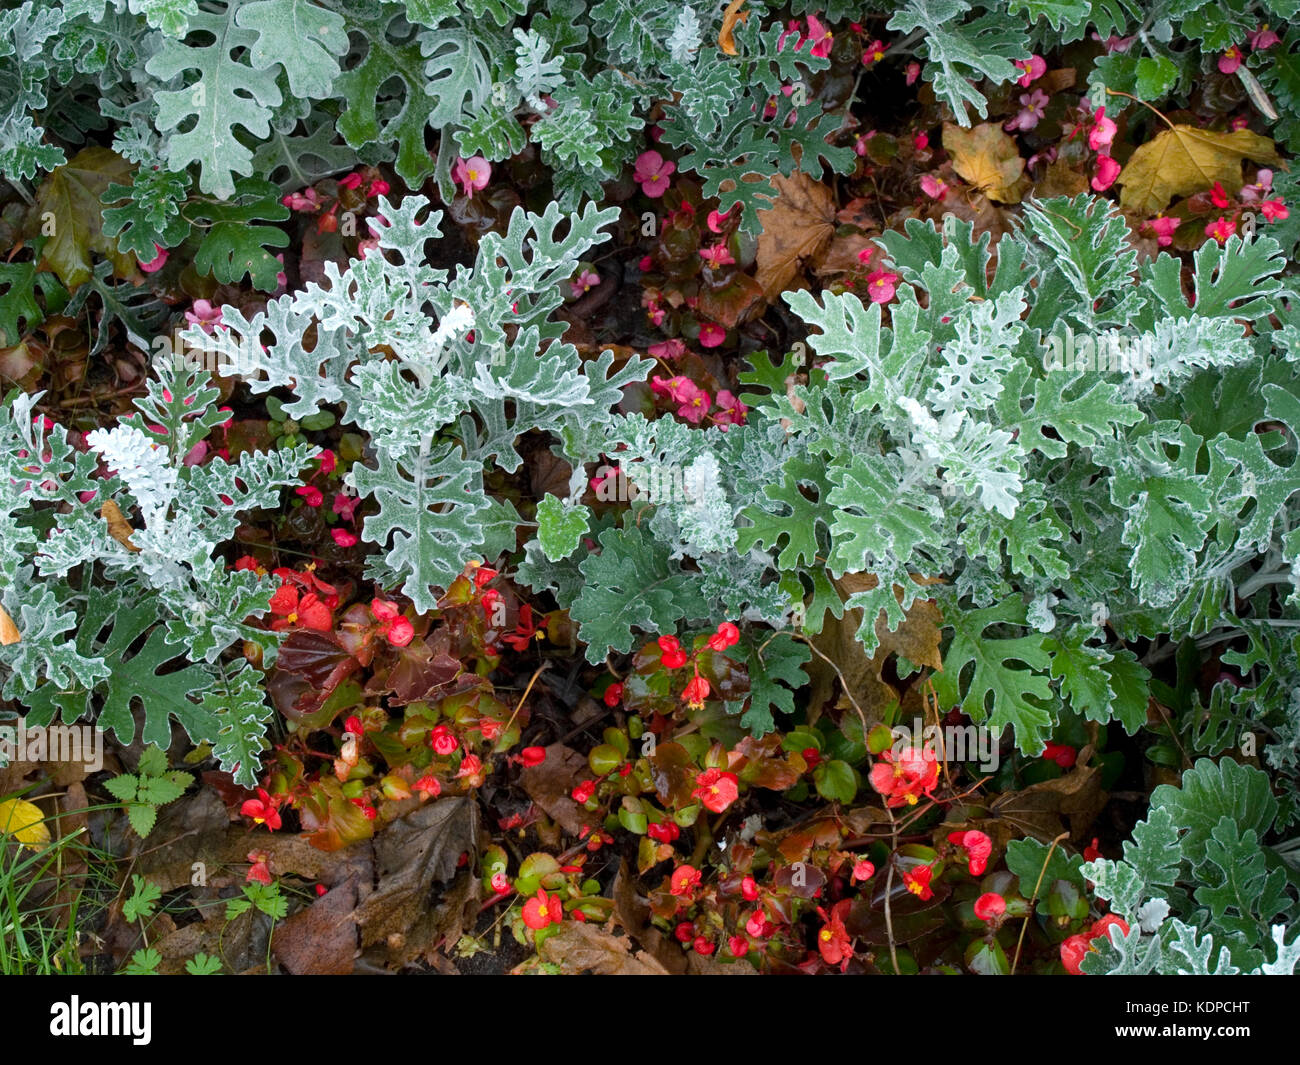 Senecio cineraria 'Silver Dust' shrub in autumn Stock Photo